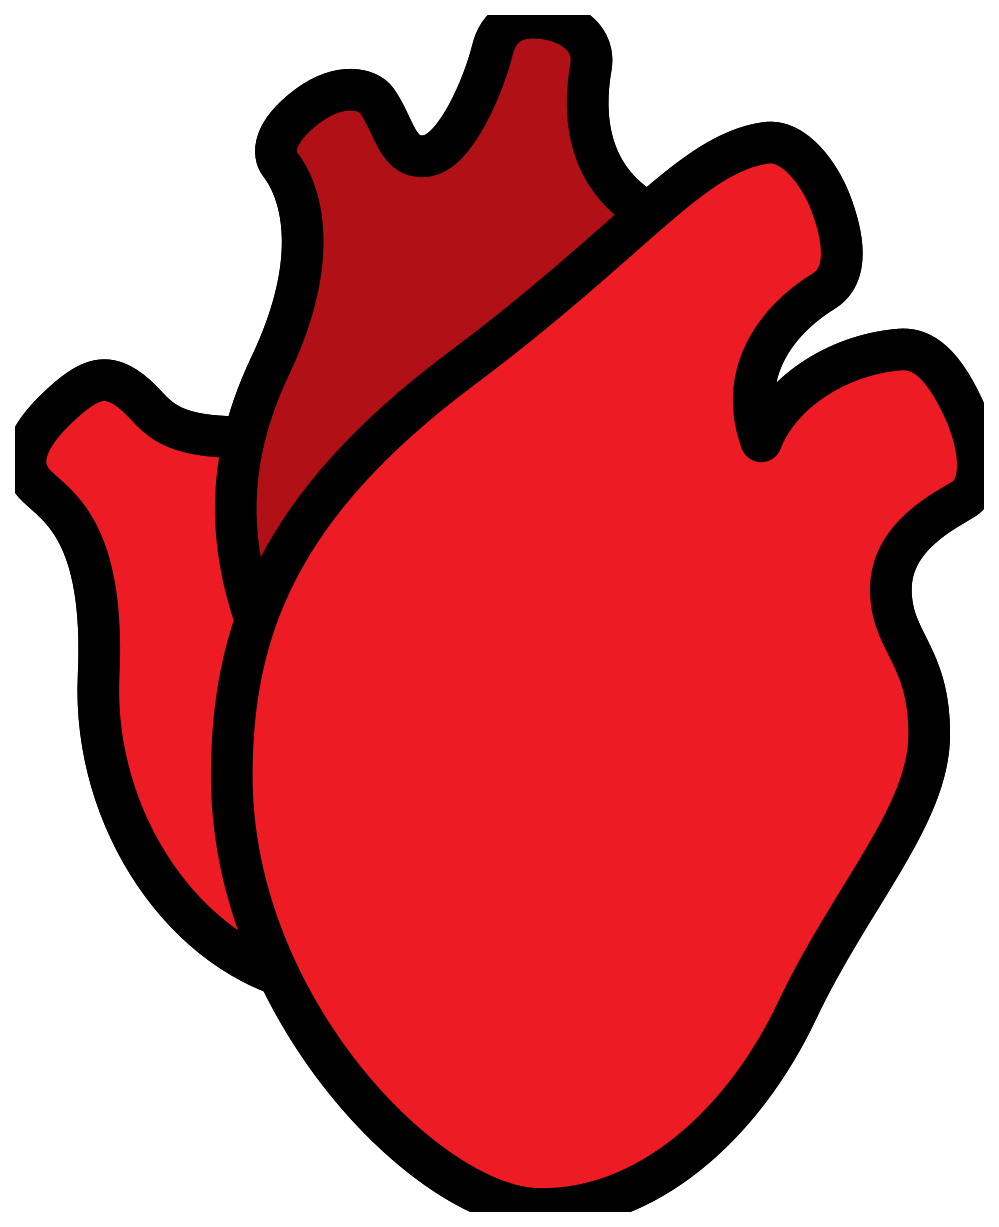 Imagen de PNG libre de corazón humano rojo